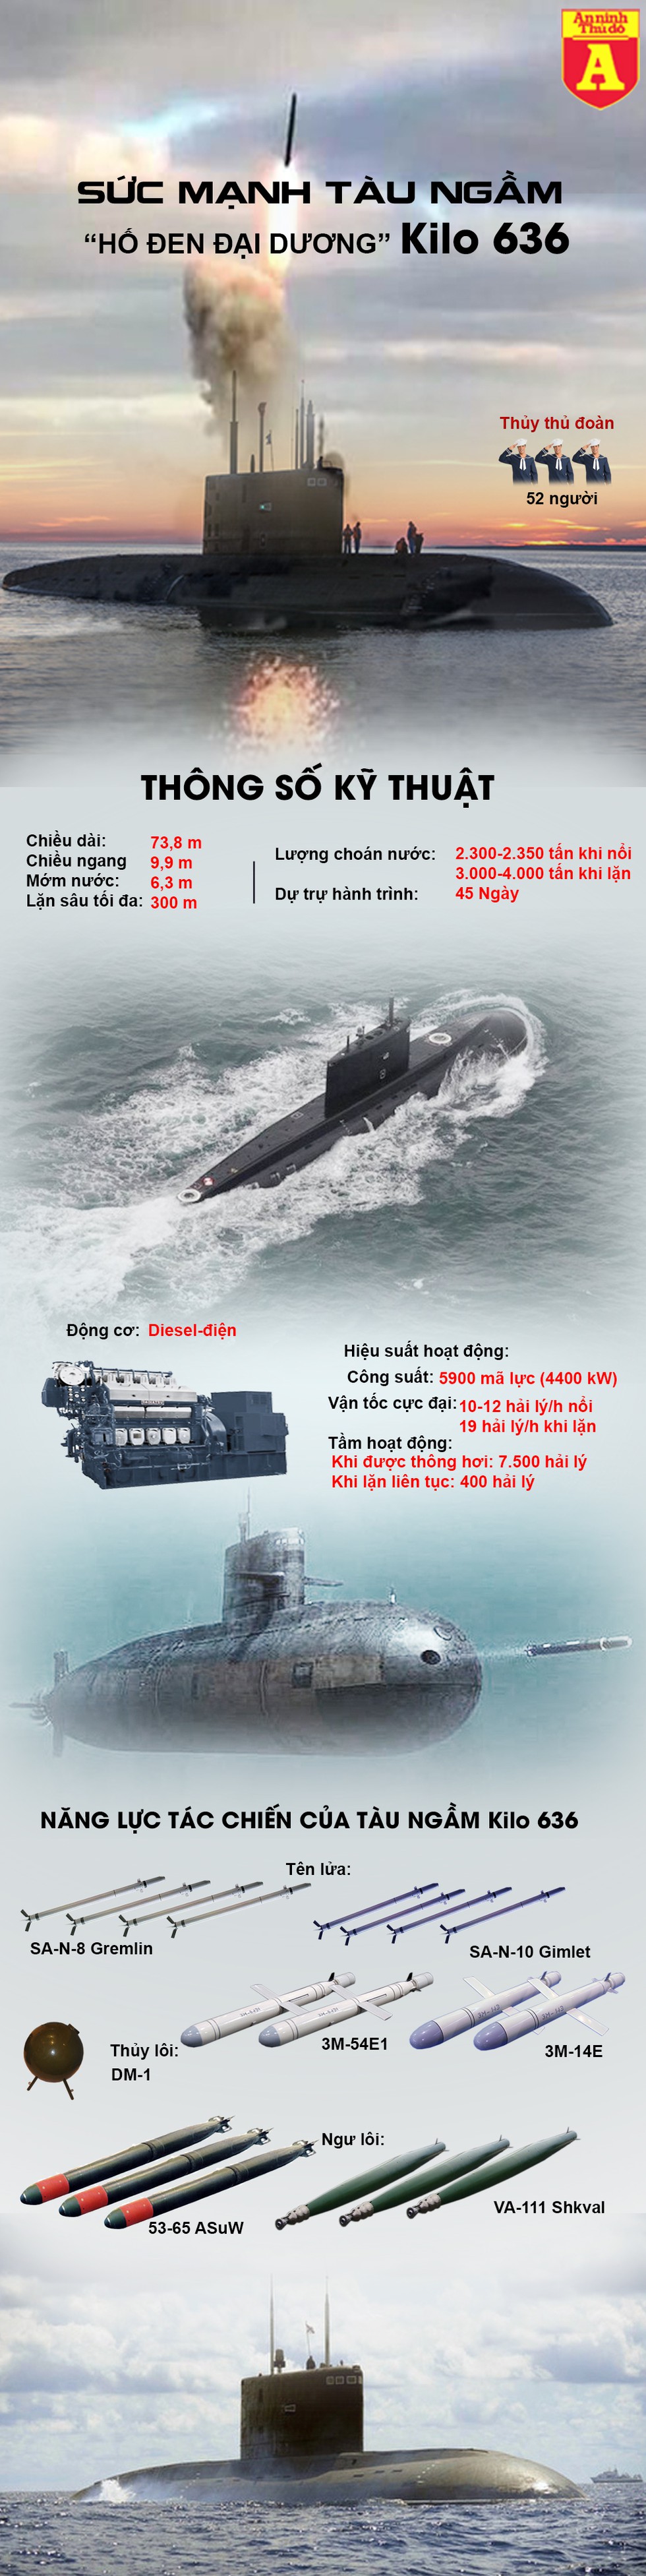 [Infographics] "Hố đen đại dương" Kilo 636 Nga lại lầm lũi tiến vào Địa Trung Hải - Ảnh 1